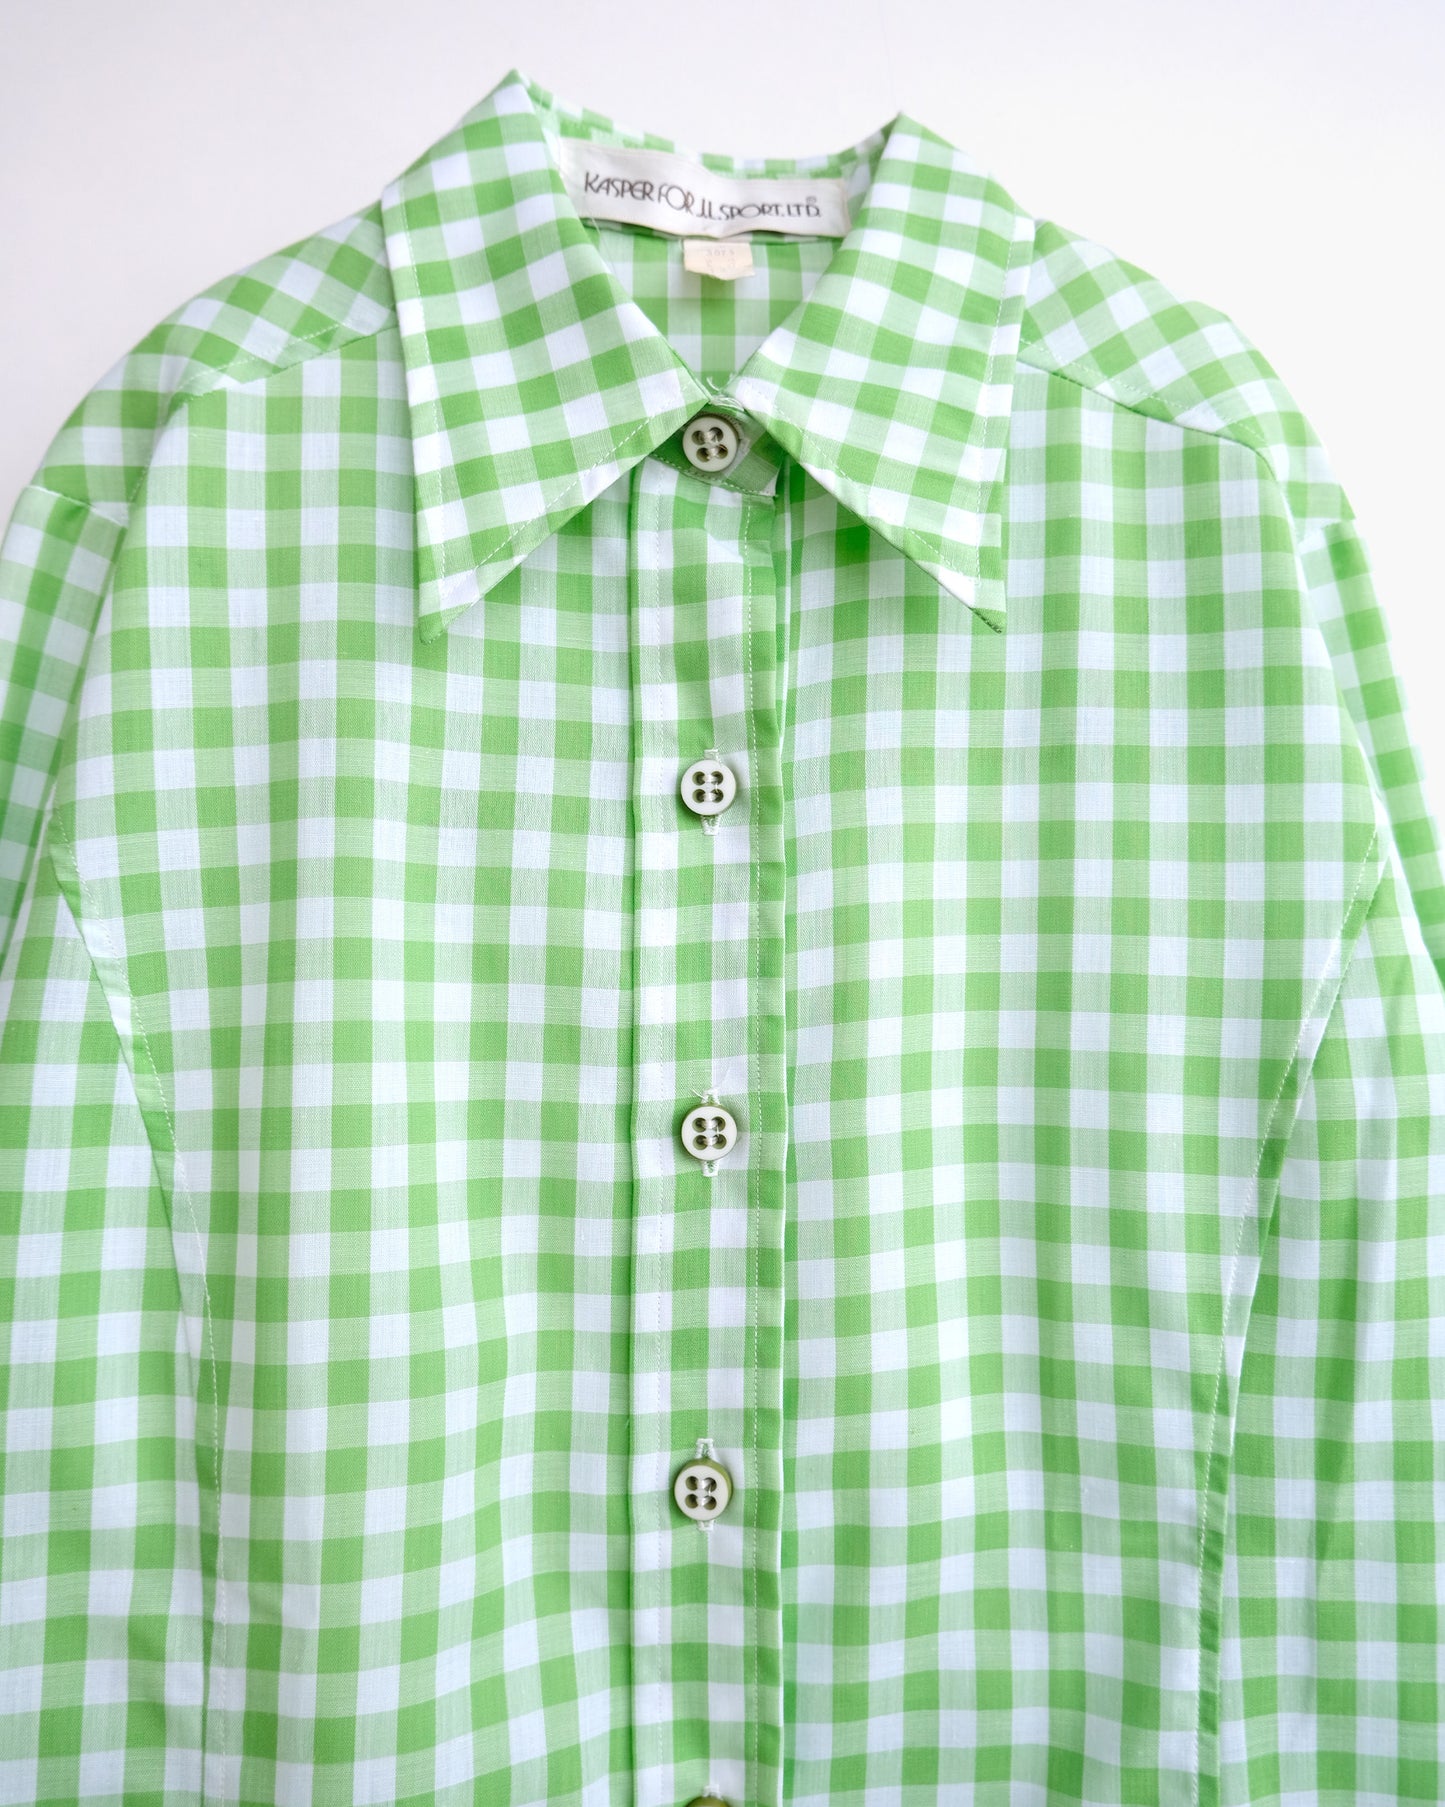 70s Patterned Cotton L/S Shirt